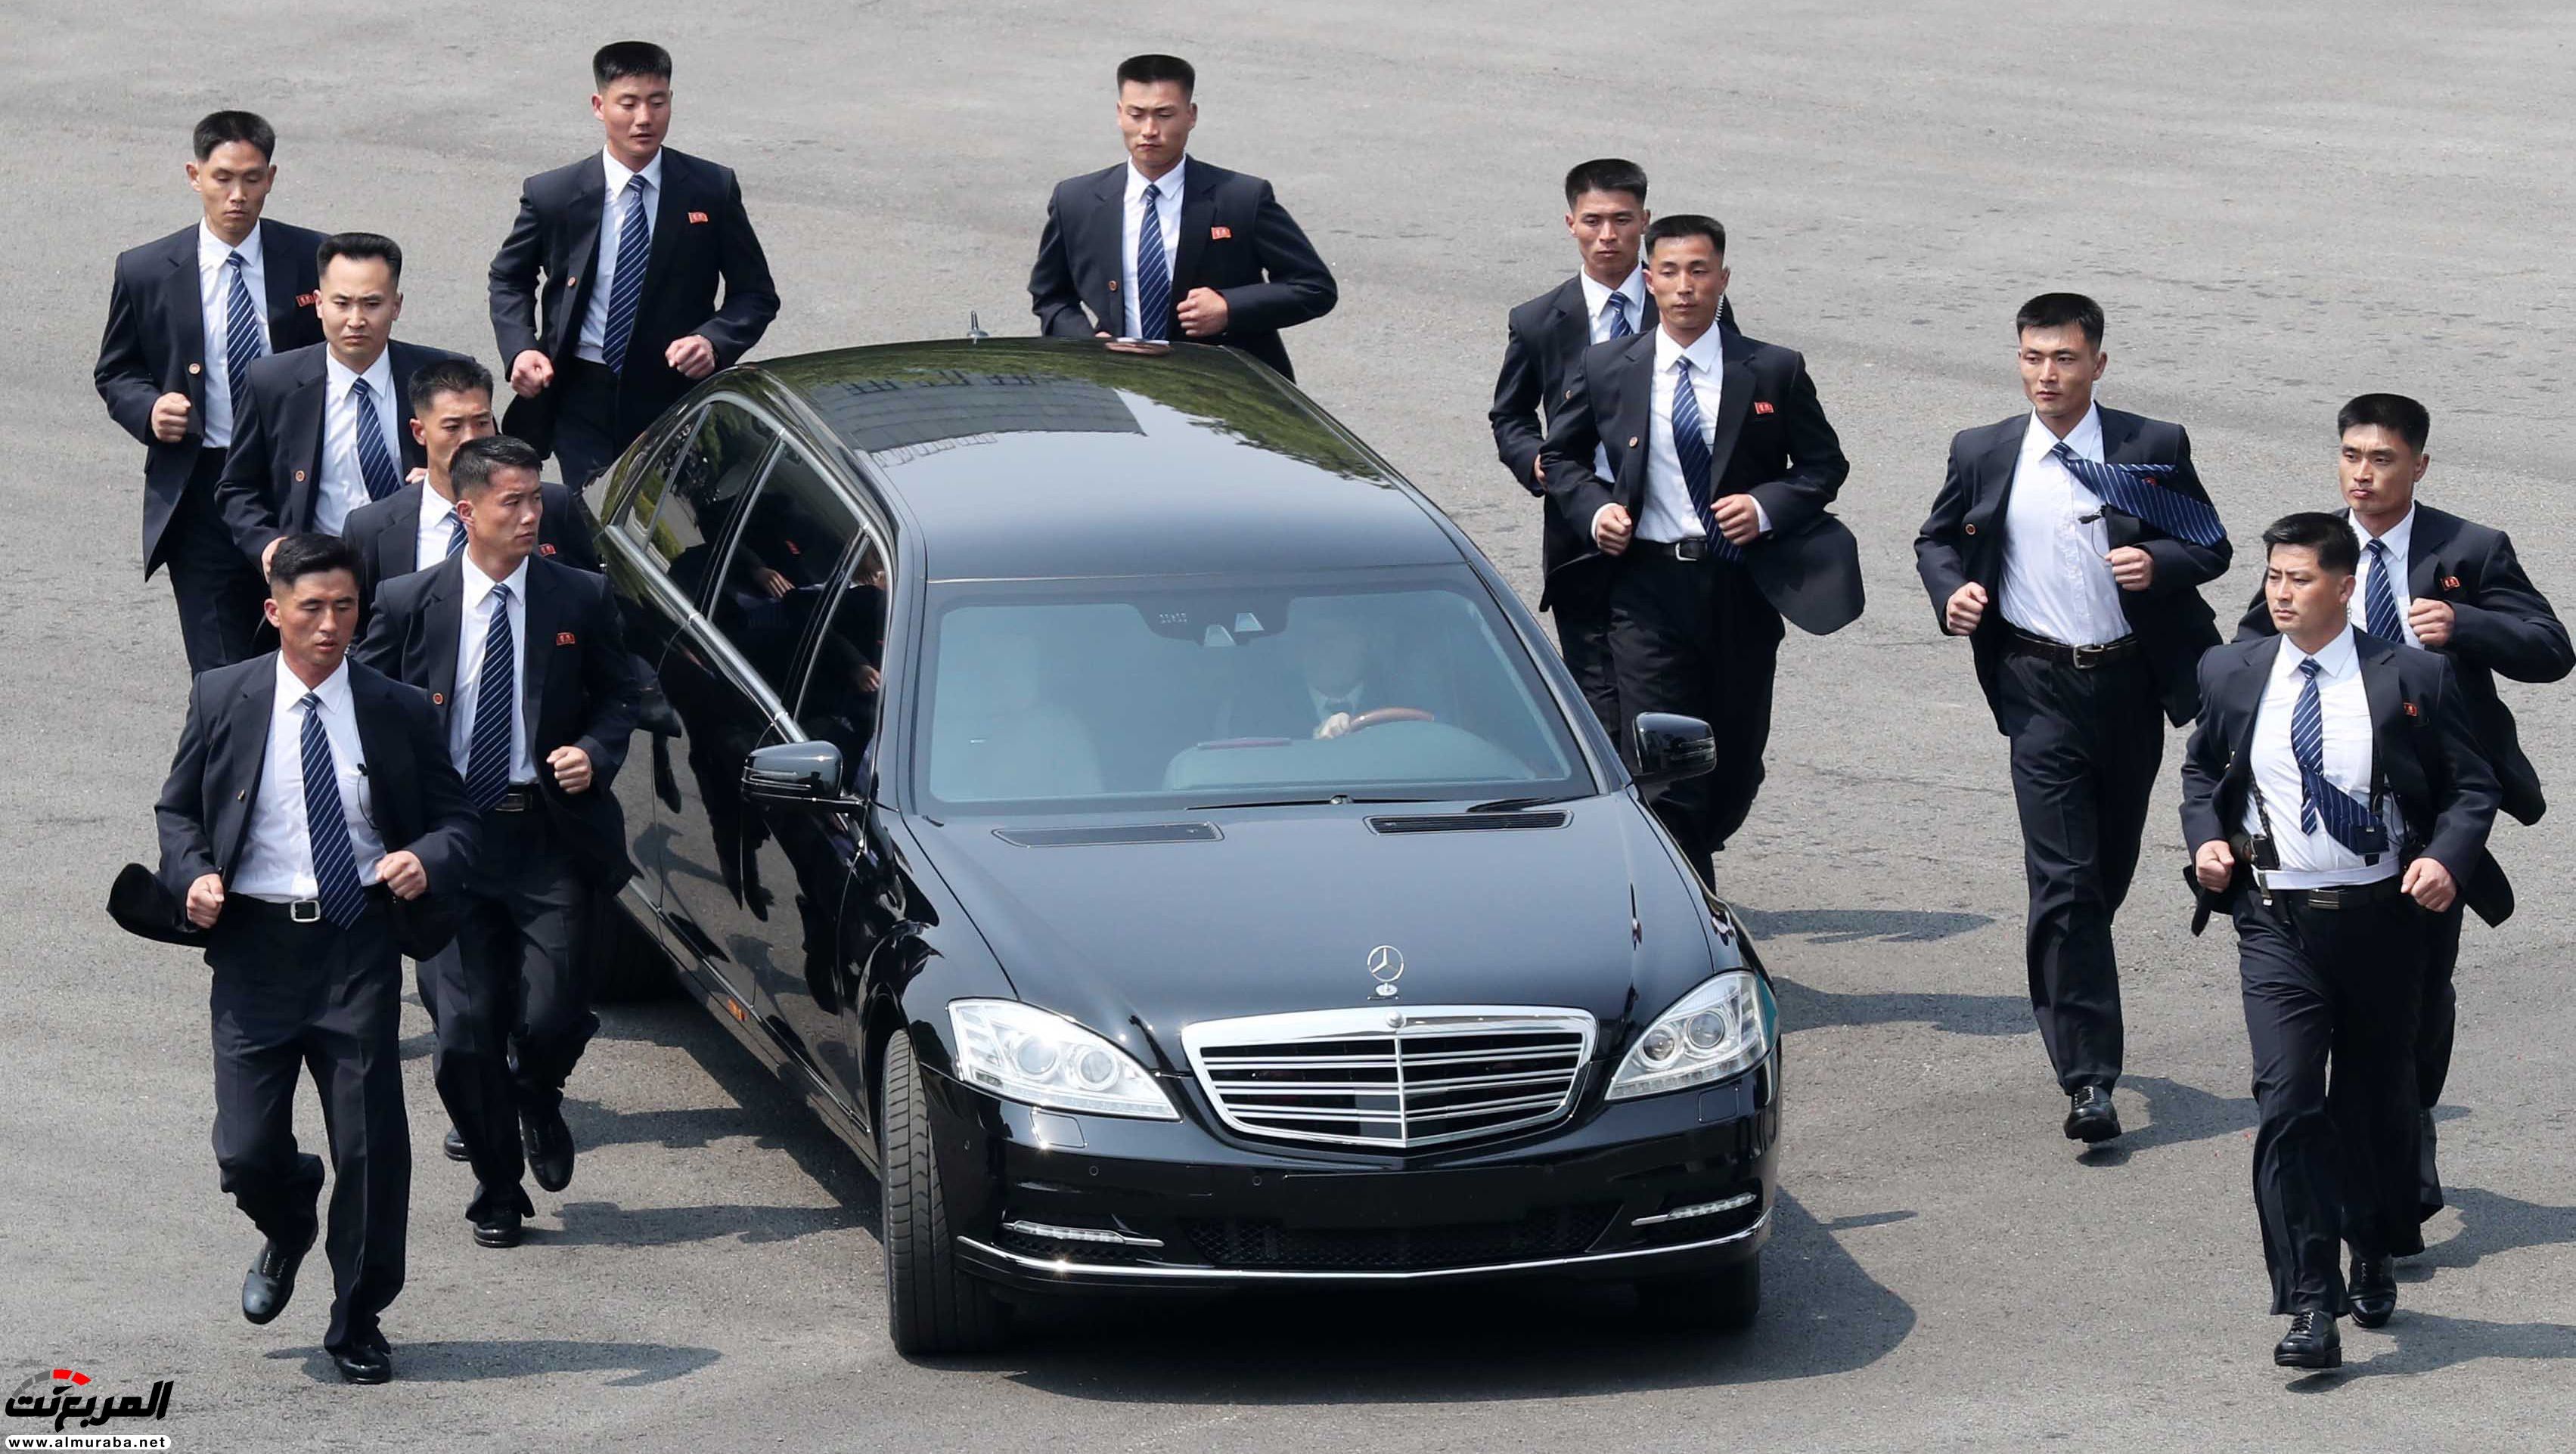 سر امتلاك زعيم كوريا الشمالية سيارات مرسيدس بولمان المحظورة على بلاده 2